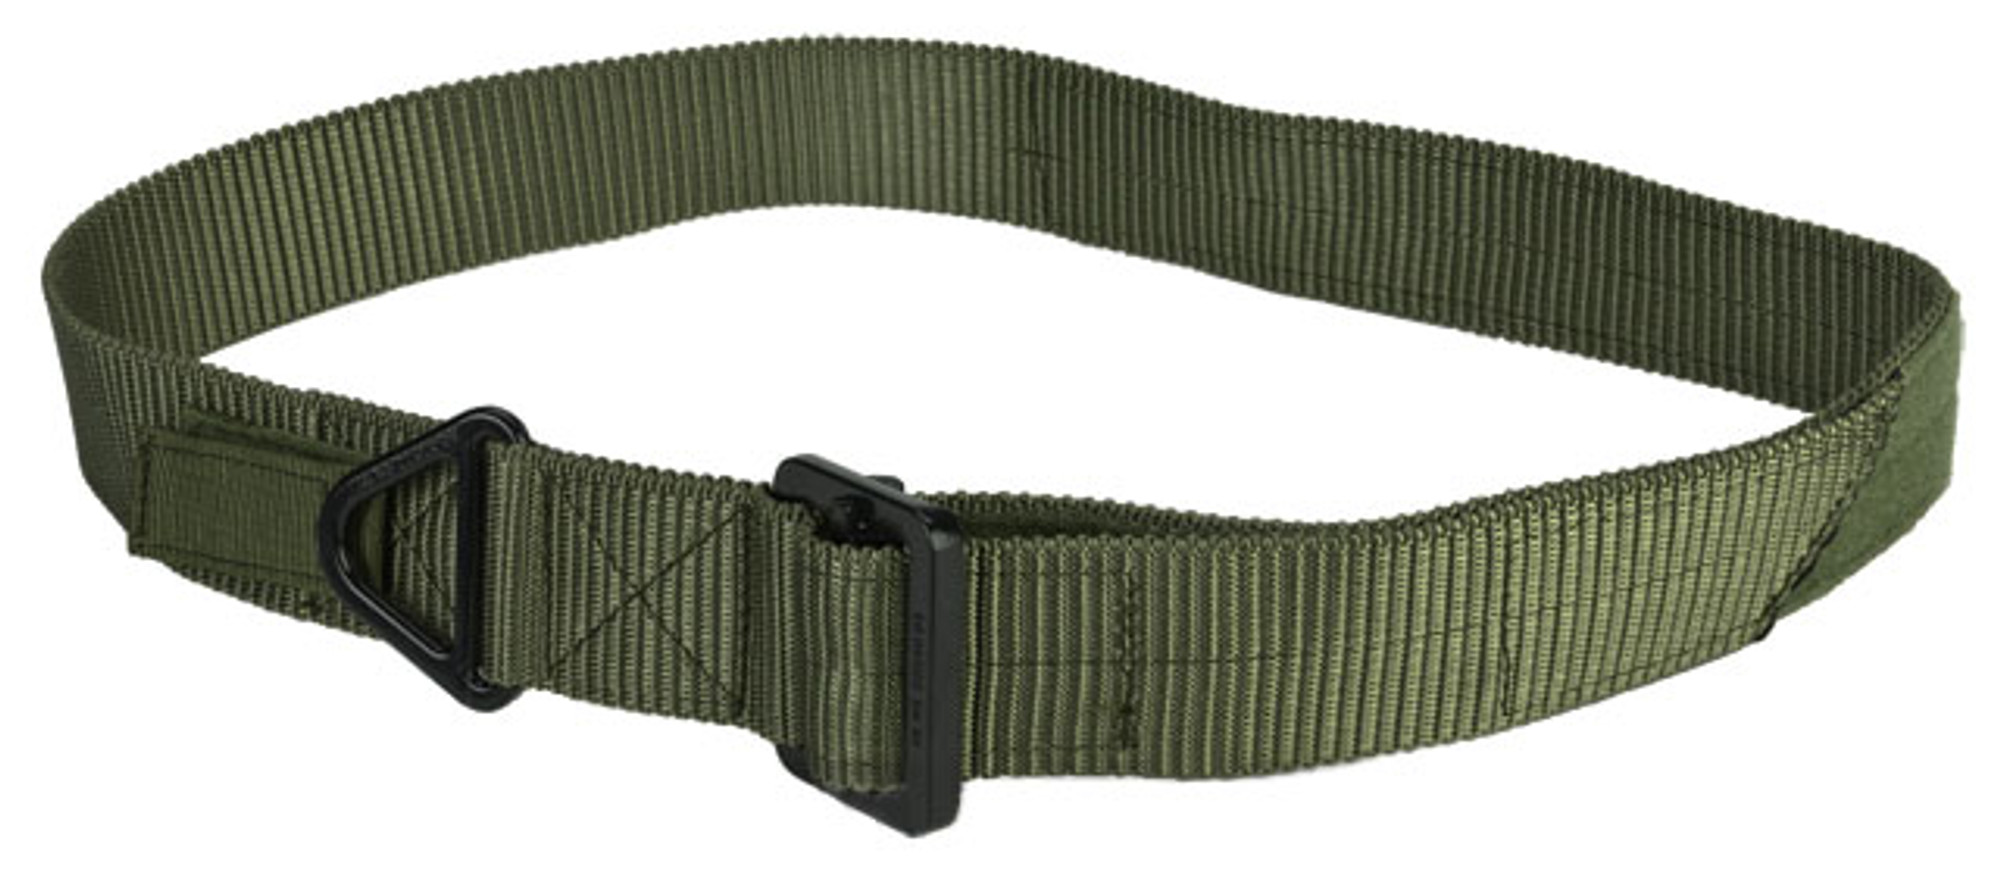 Lancer Tactical Riggers Belt - OD Green